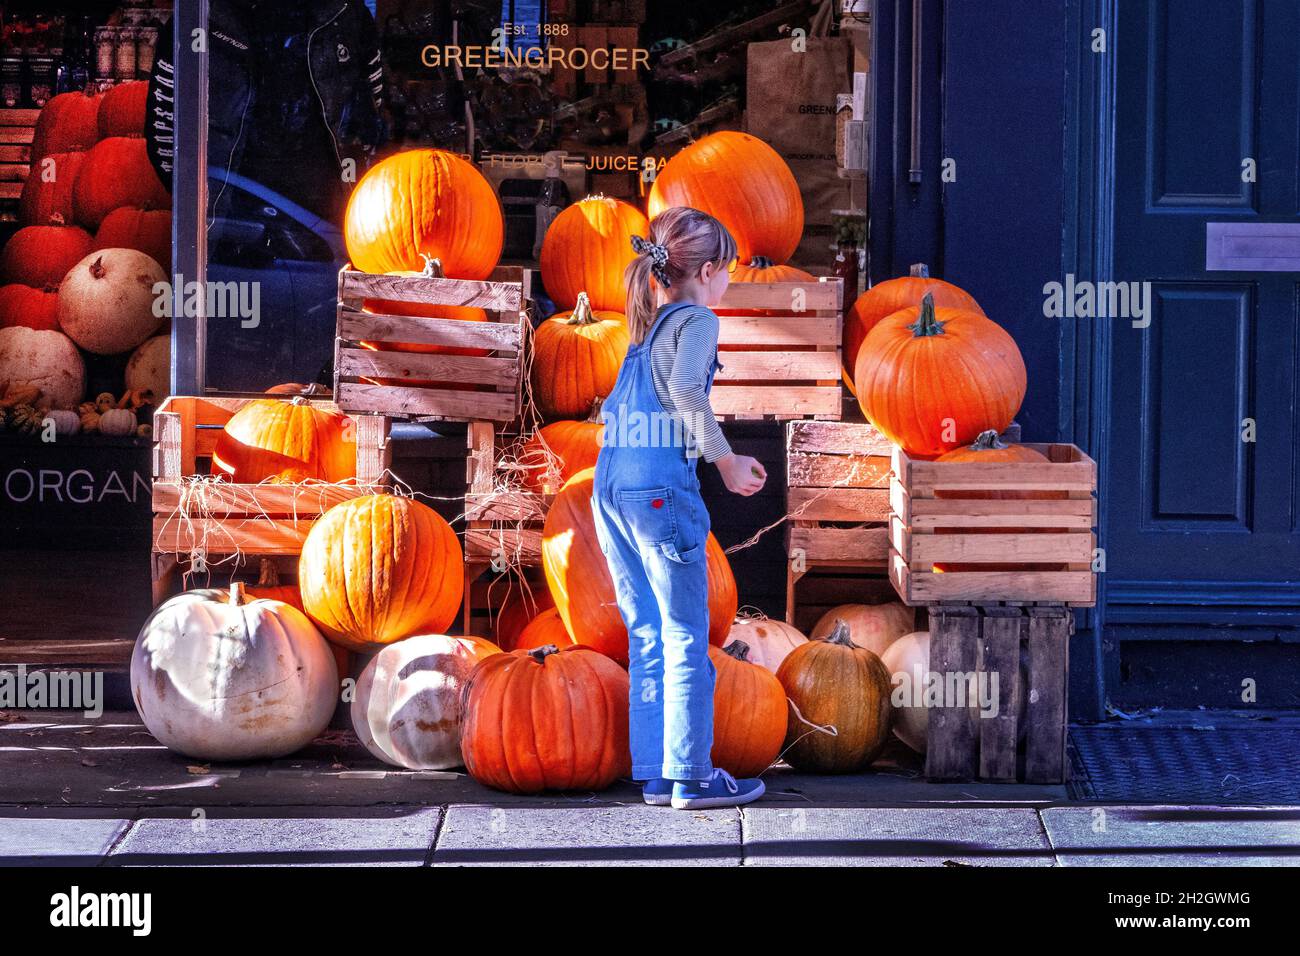 Junge Person, die in einem Lebensmittelgeschäft im Norden Londons in Großbritannien Kürbisse kauft, um sich auf das Halloween-Festival vorzubereiten Stockfoto